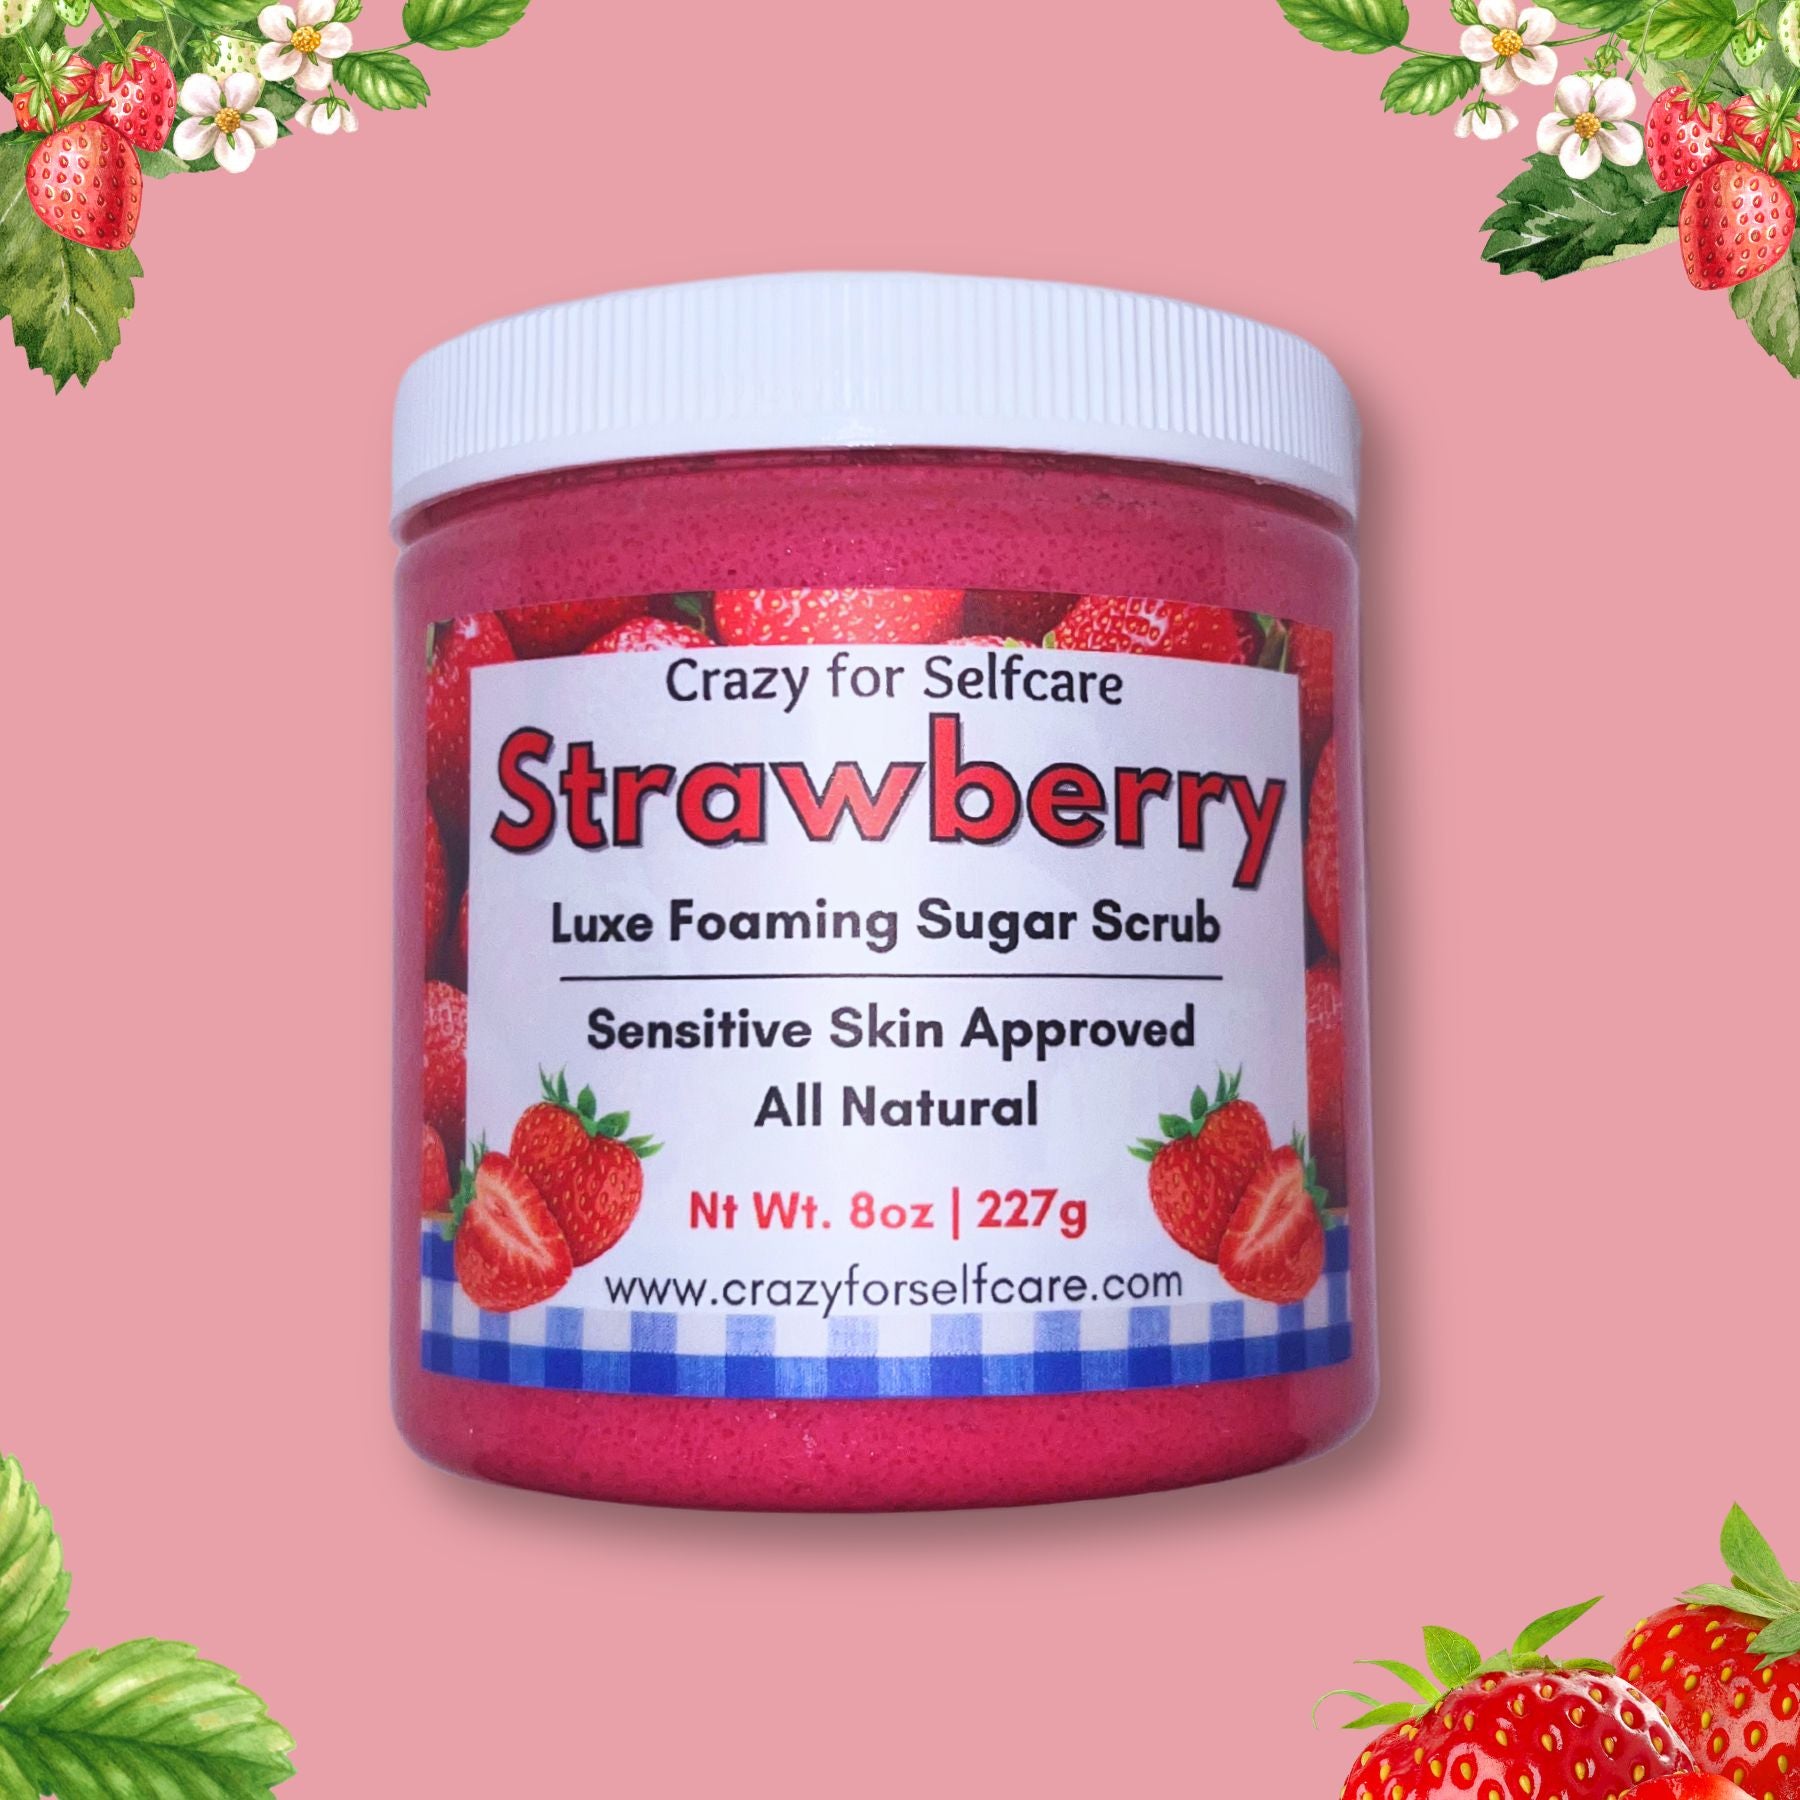 Strawberry Luxe Foaming Sugar Scrub